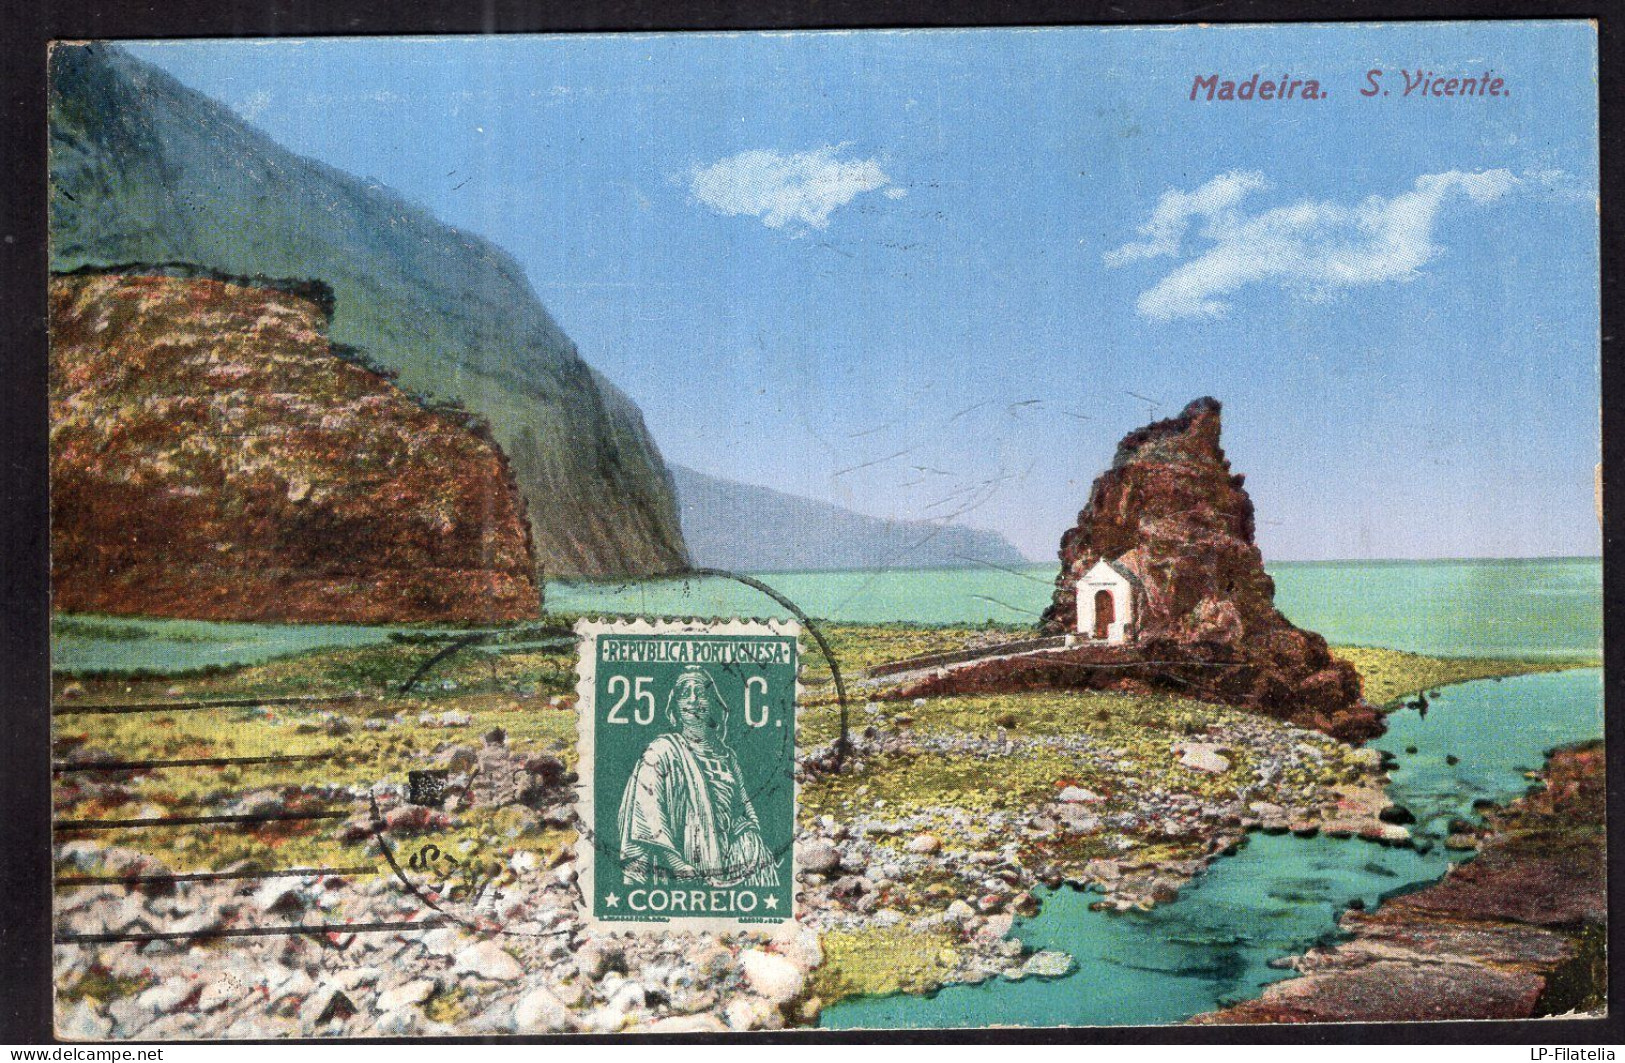 Portugal - 1931 - Madeira - S. Vicente - Madeira